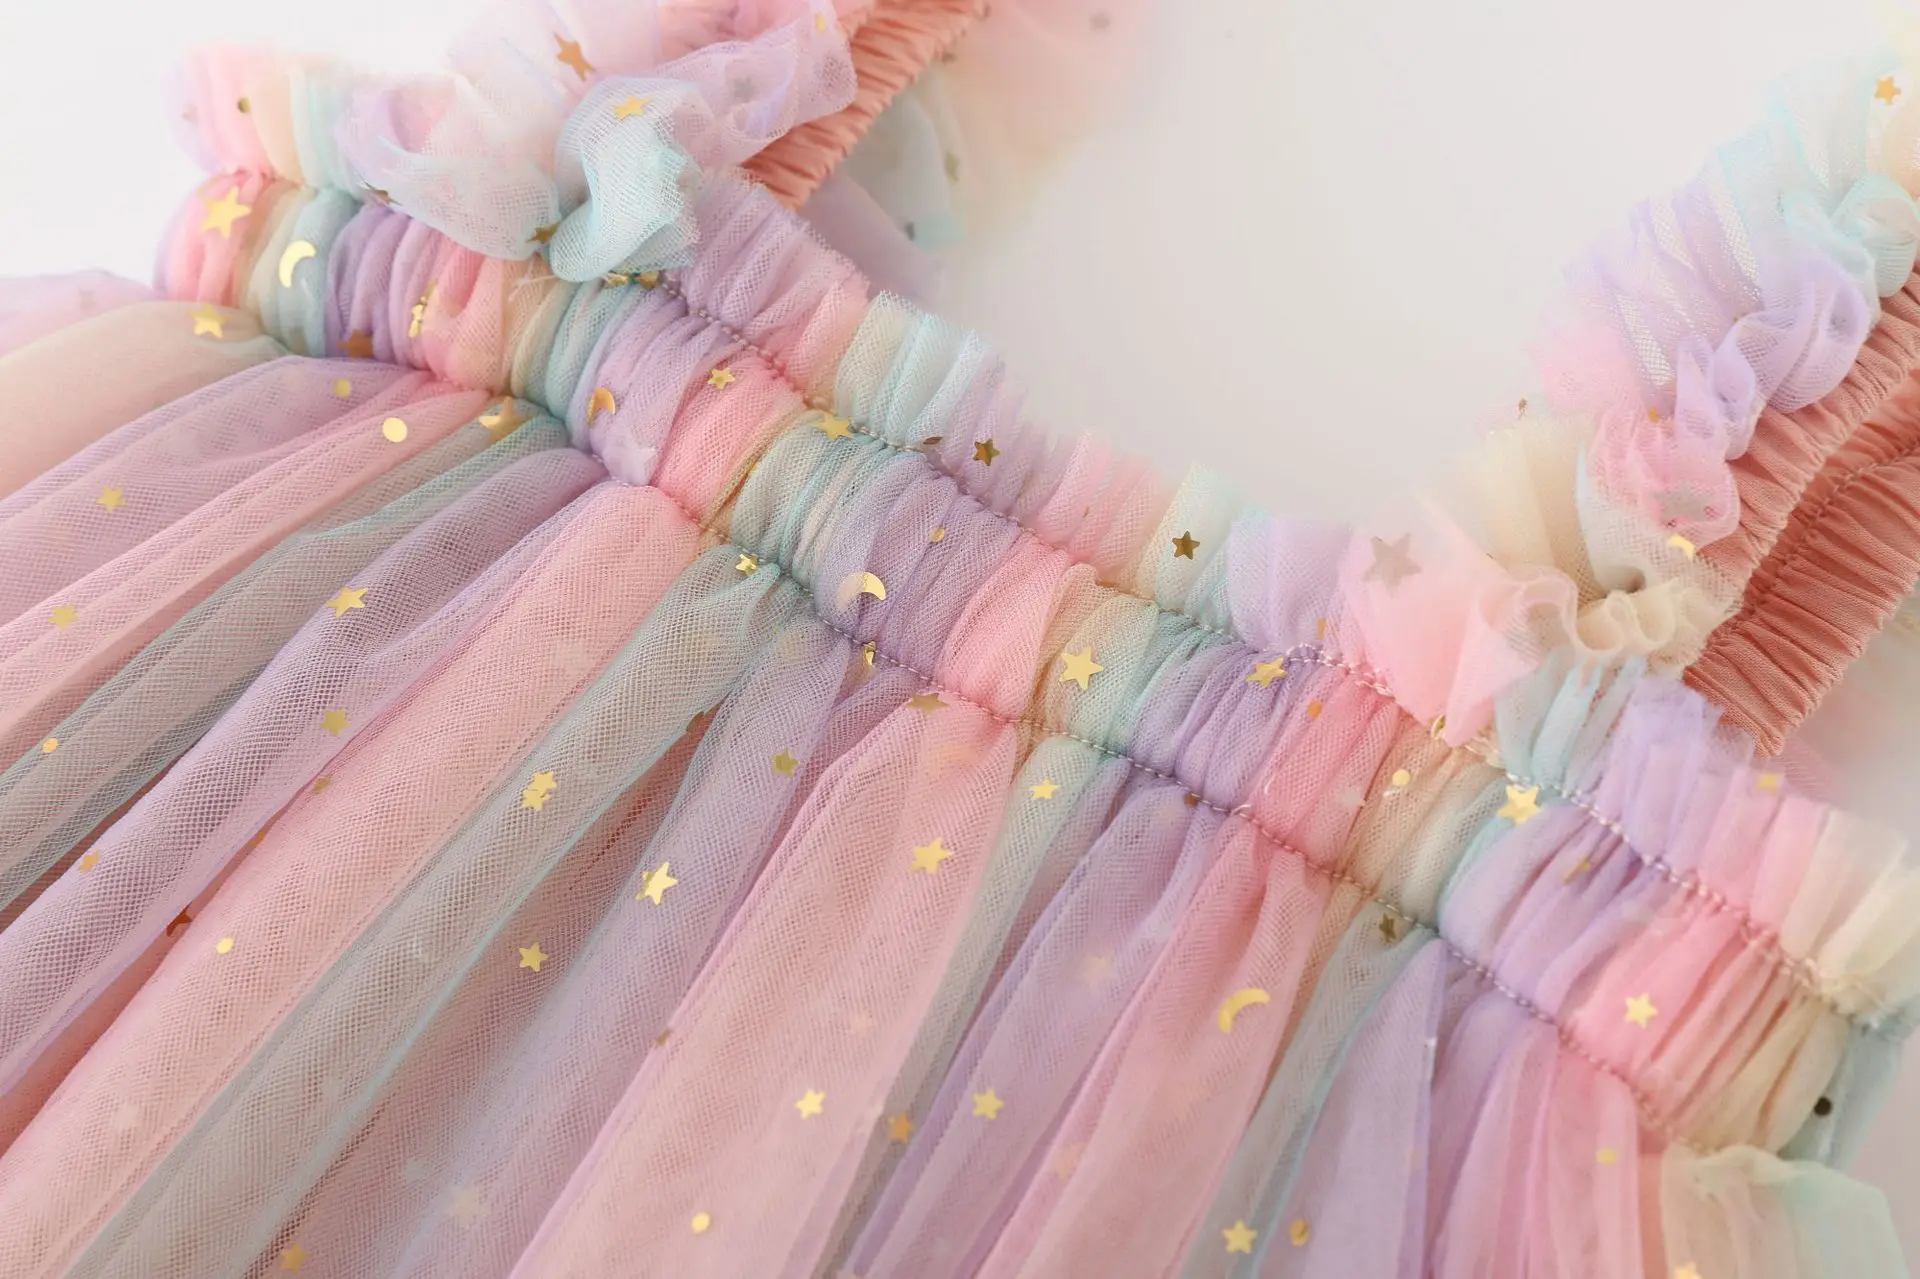 Μικρό Παιδί Κορίτσι Πριγκίπισσα Φόρεμα Μωρό Rainbow Unicorn Τούλι Τα Παιδιά Κοστουμιών Καλοκαίρι Αμάνικο Φορέματα Λουριών Νεογέννητο Πάρτι Γενεθλίων Υφασμάτων